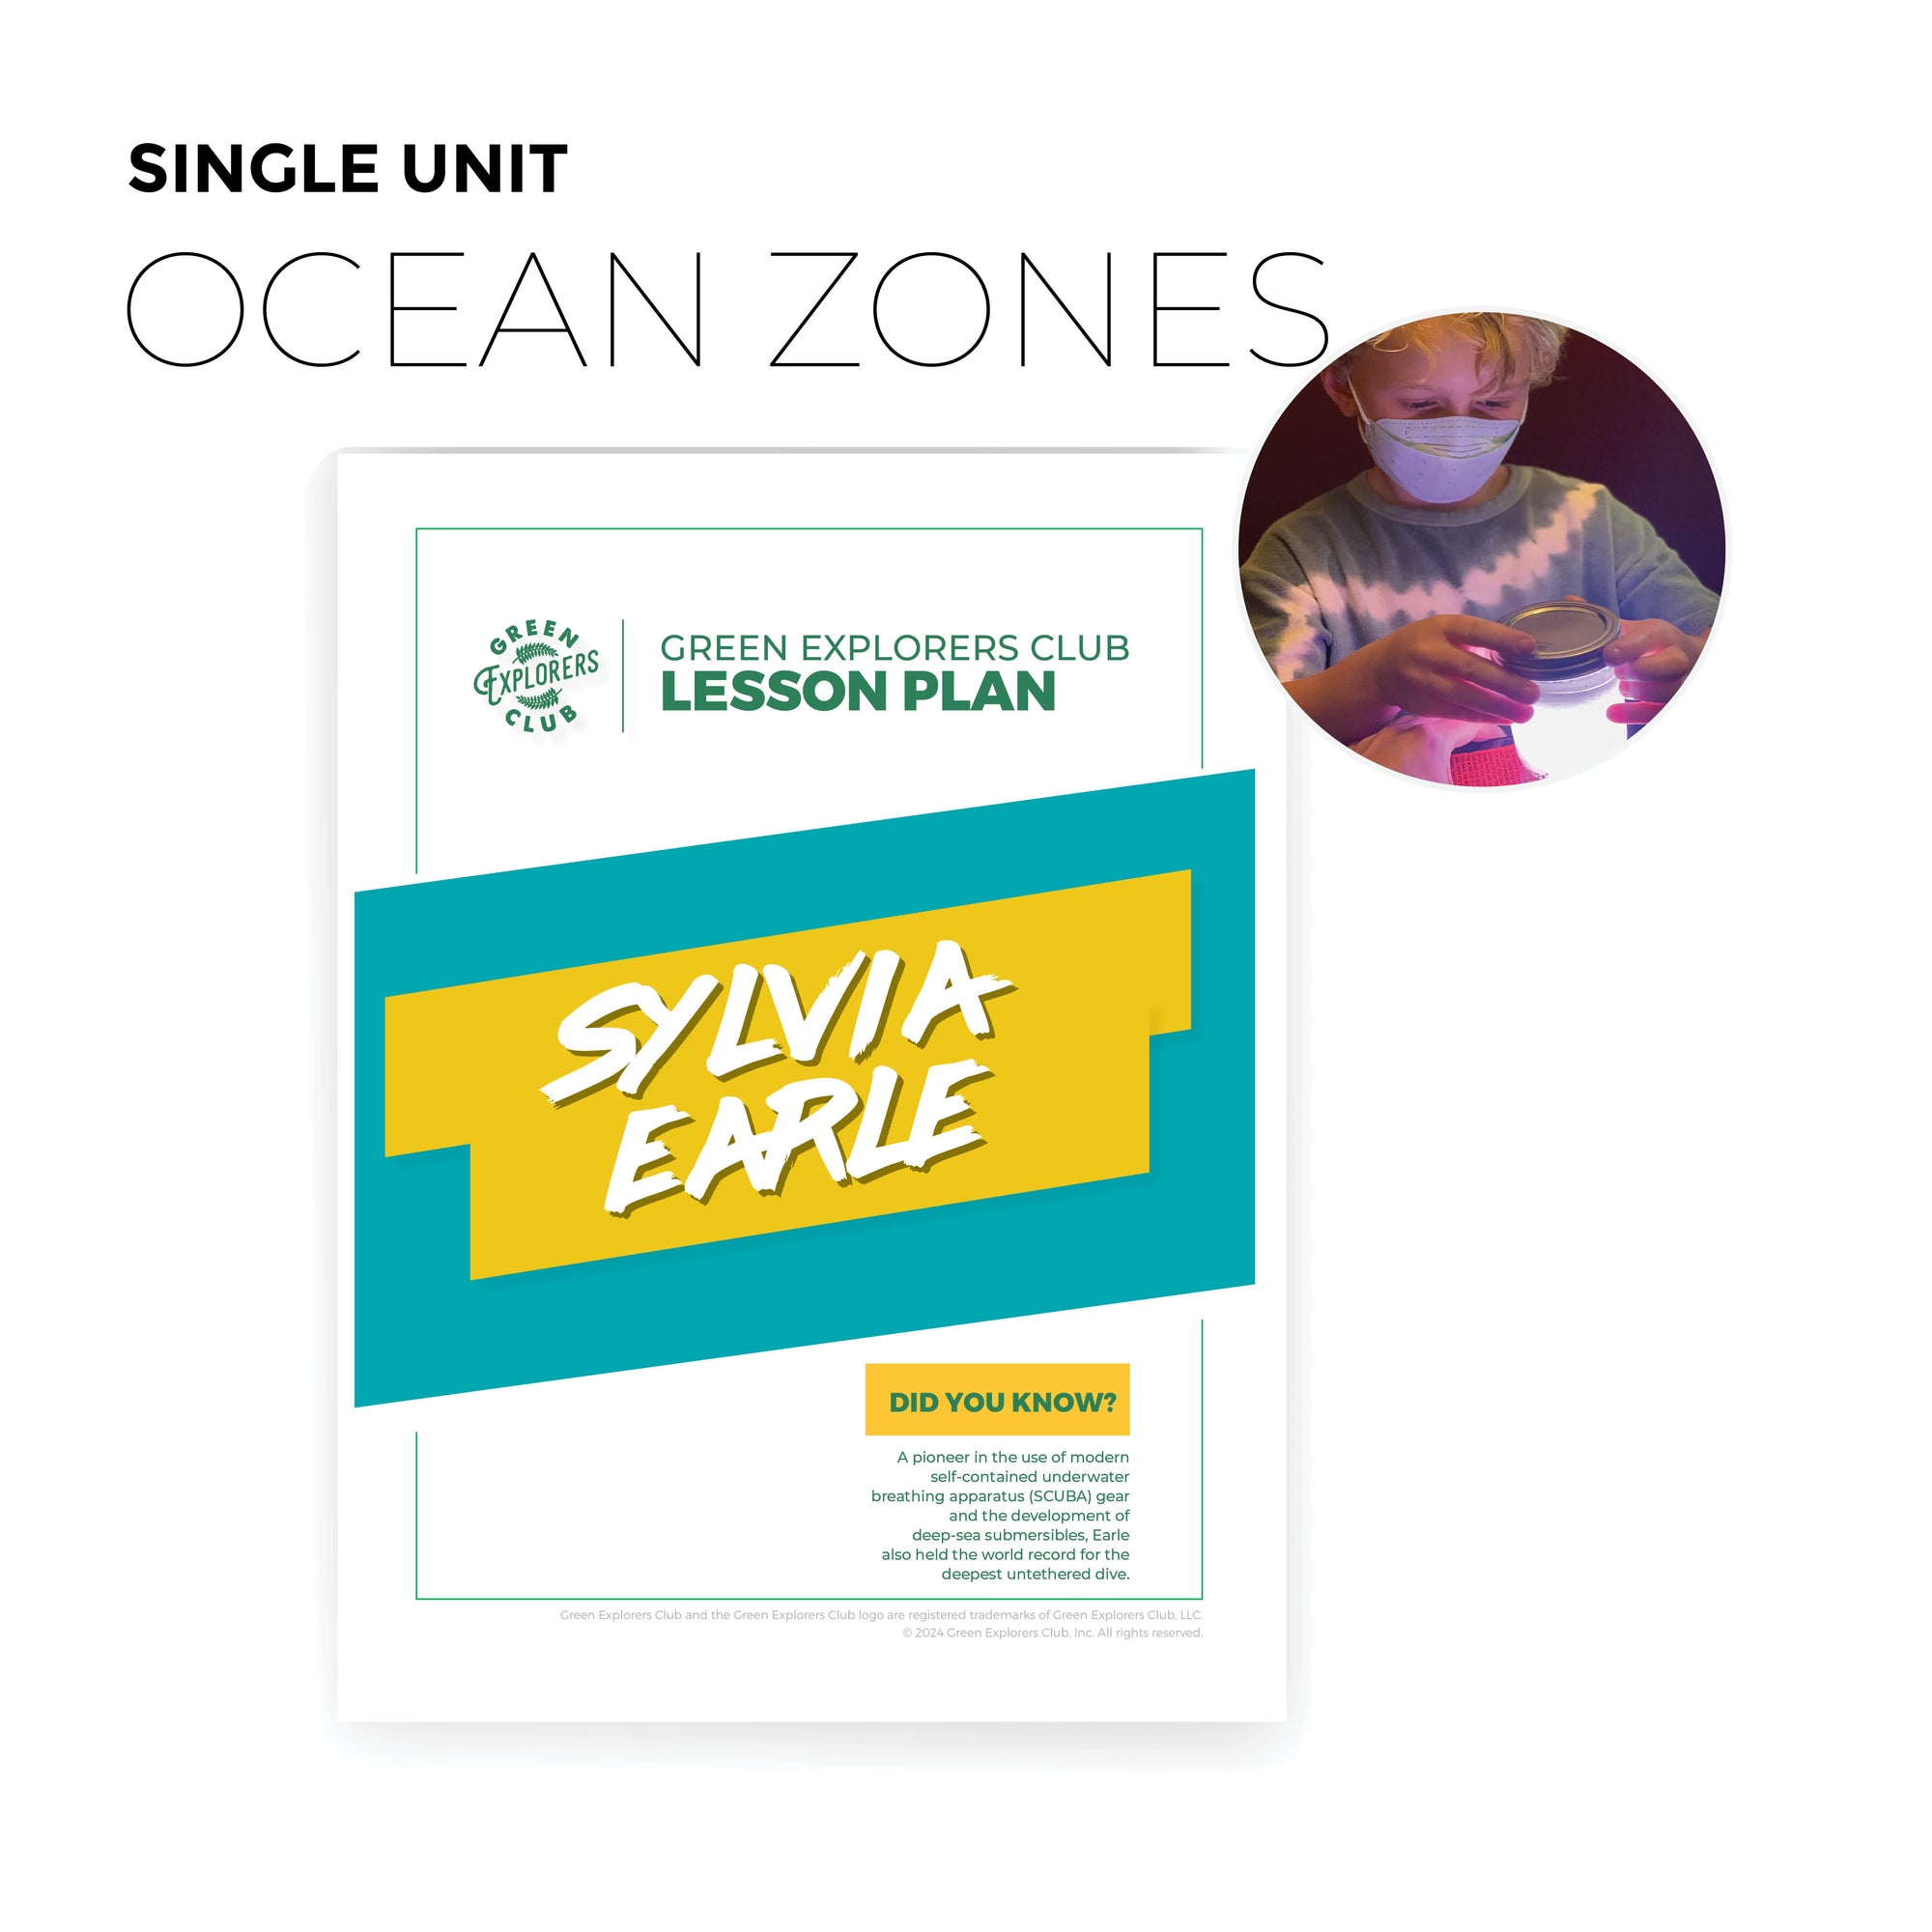 Ocean Zones (Sylvia Earle) Lesson Plan